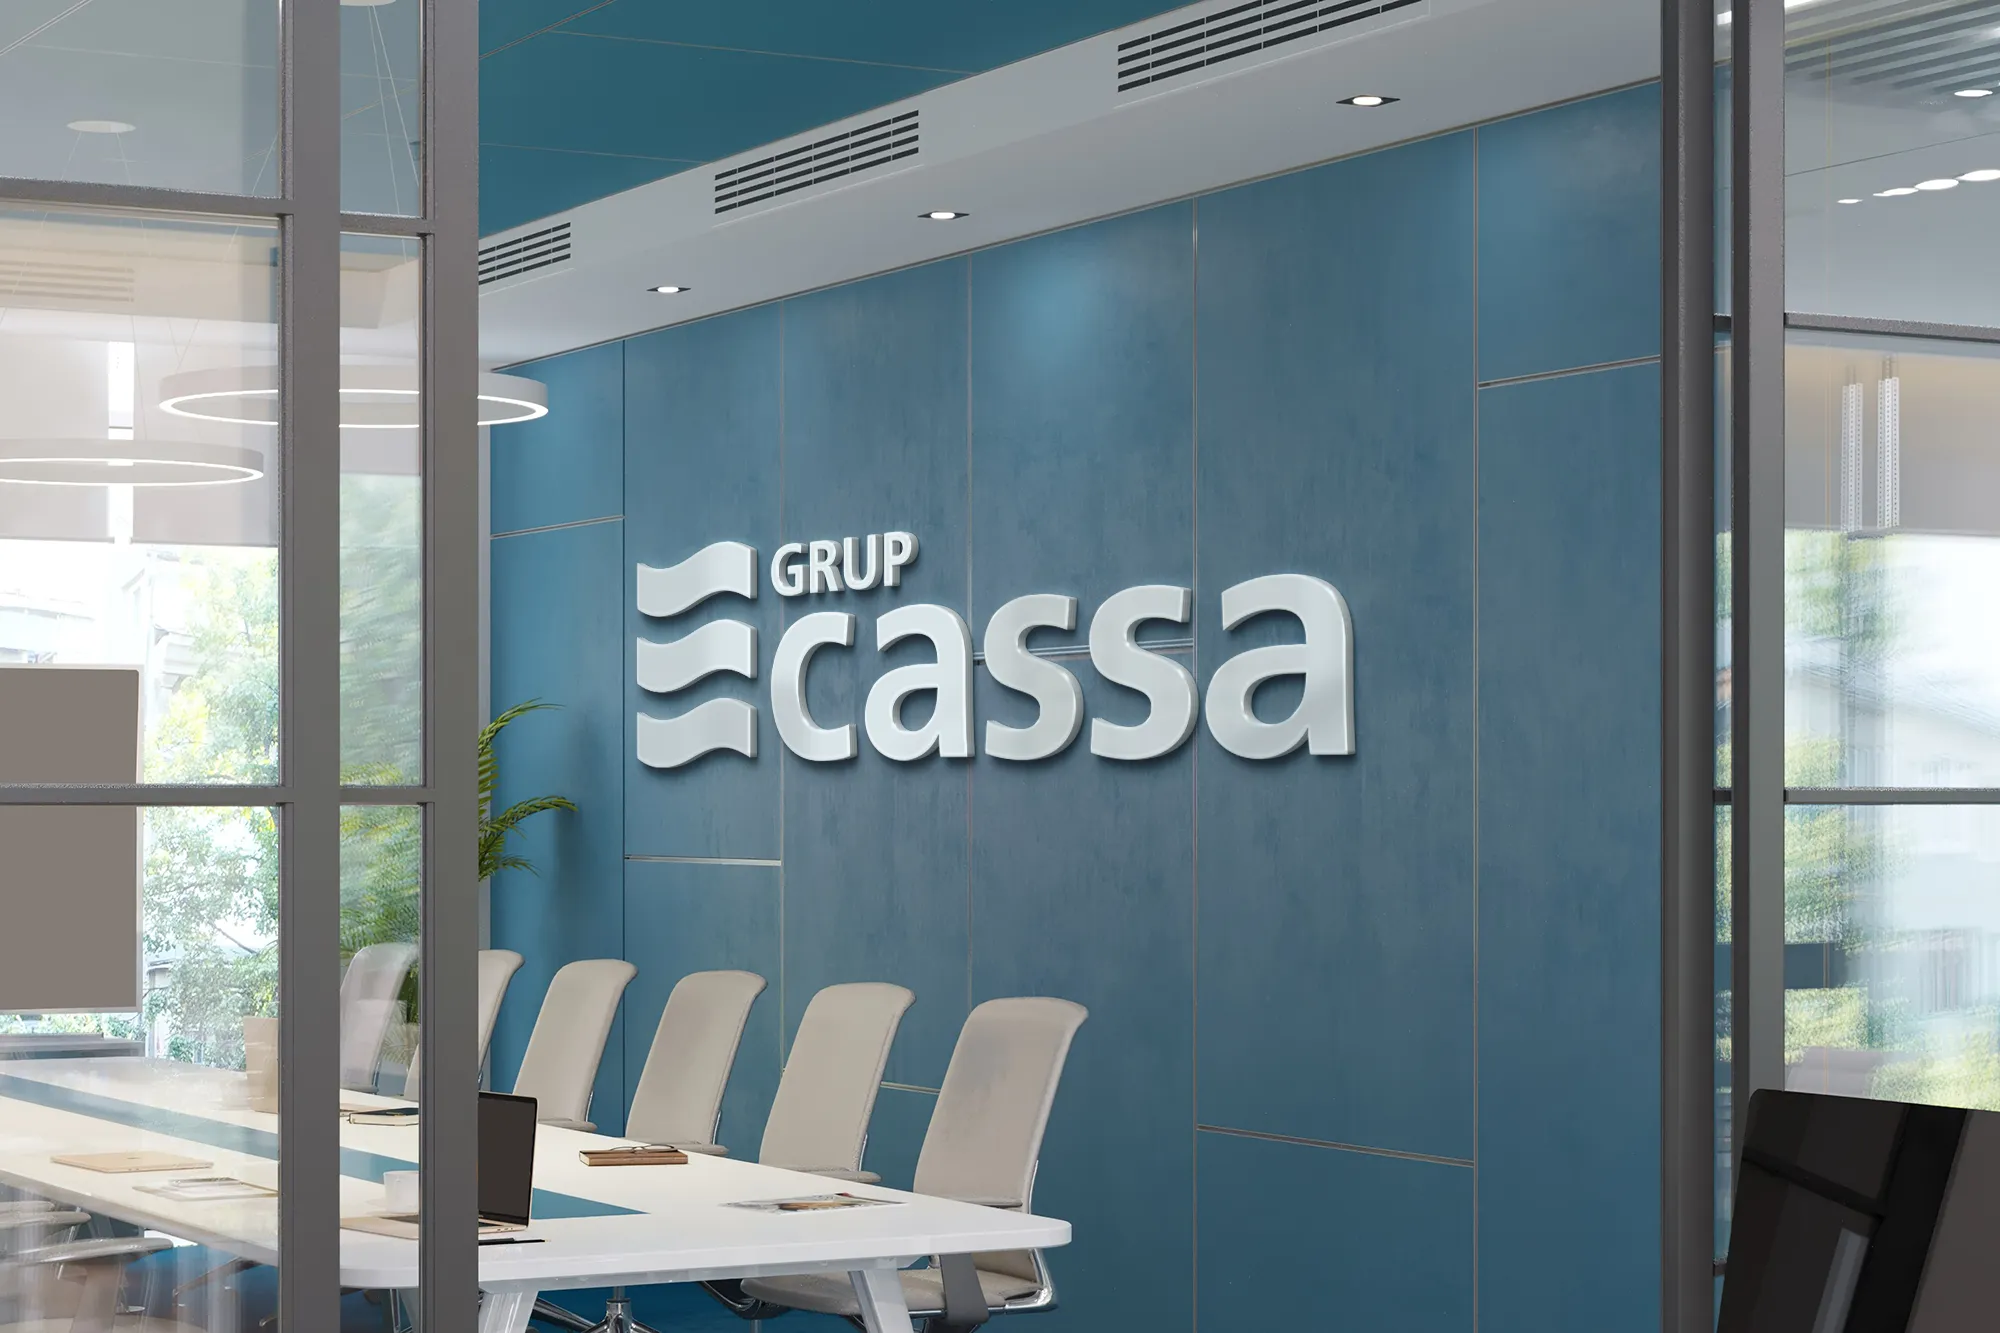 Imagen corporativa para el Grup Cassa, Aigües de Sabadell. Logotipo